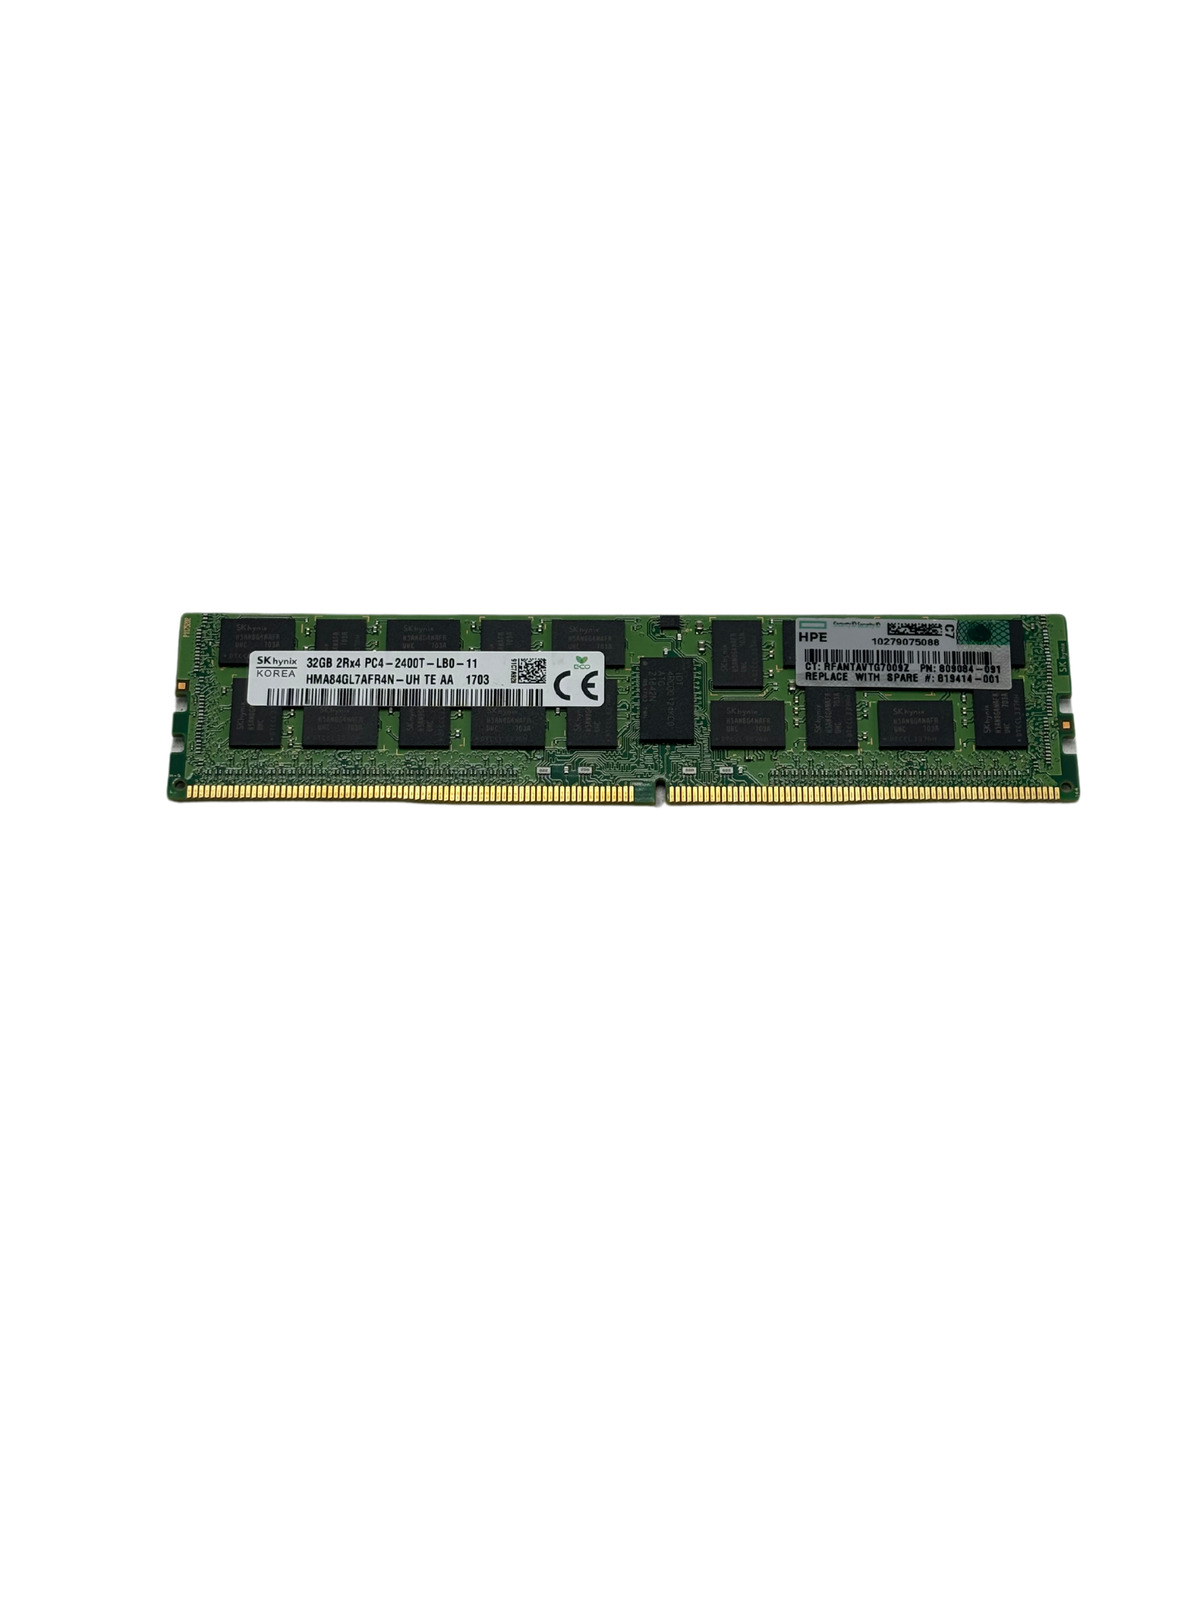 HPe 805353-B21 HPe 32GB 2Rx4 PC4-2400T-L Memory